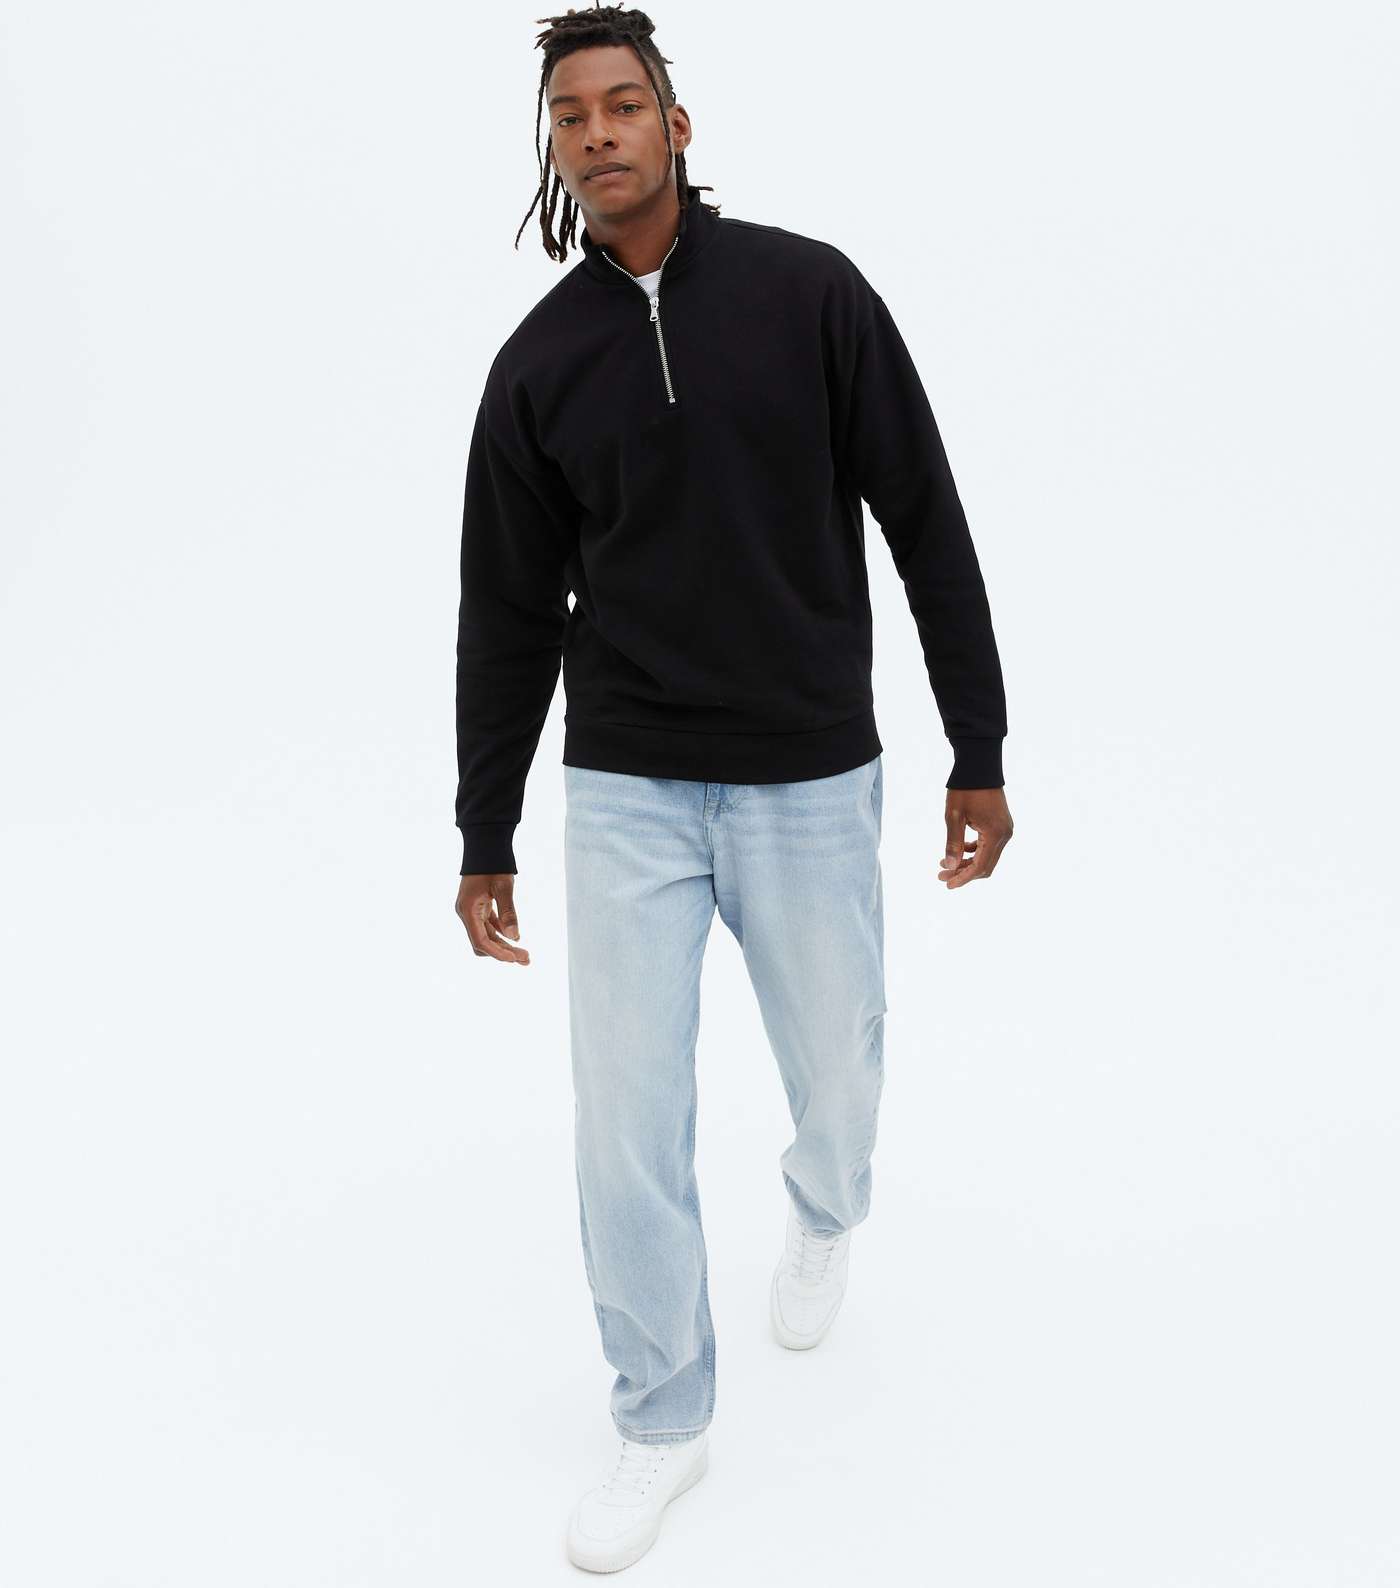 Black Zip High Neck Long Sleeve Sweatshirt Image 2